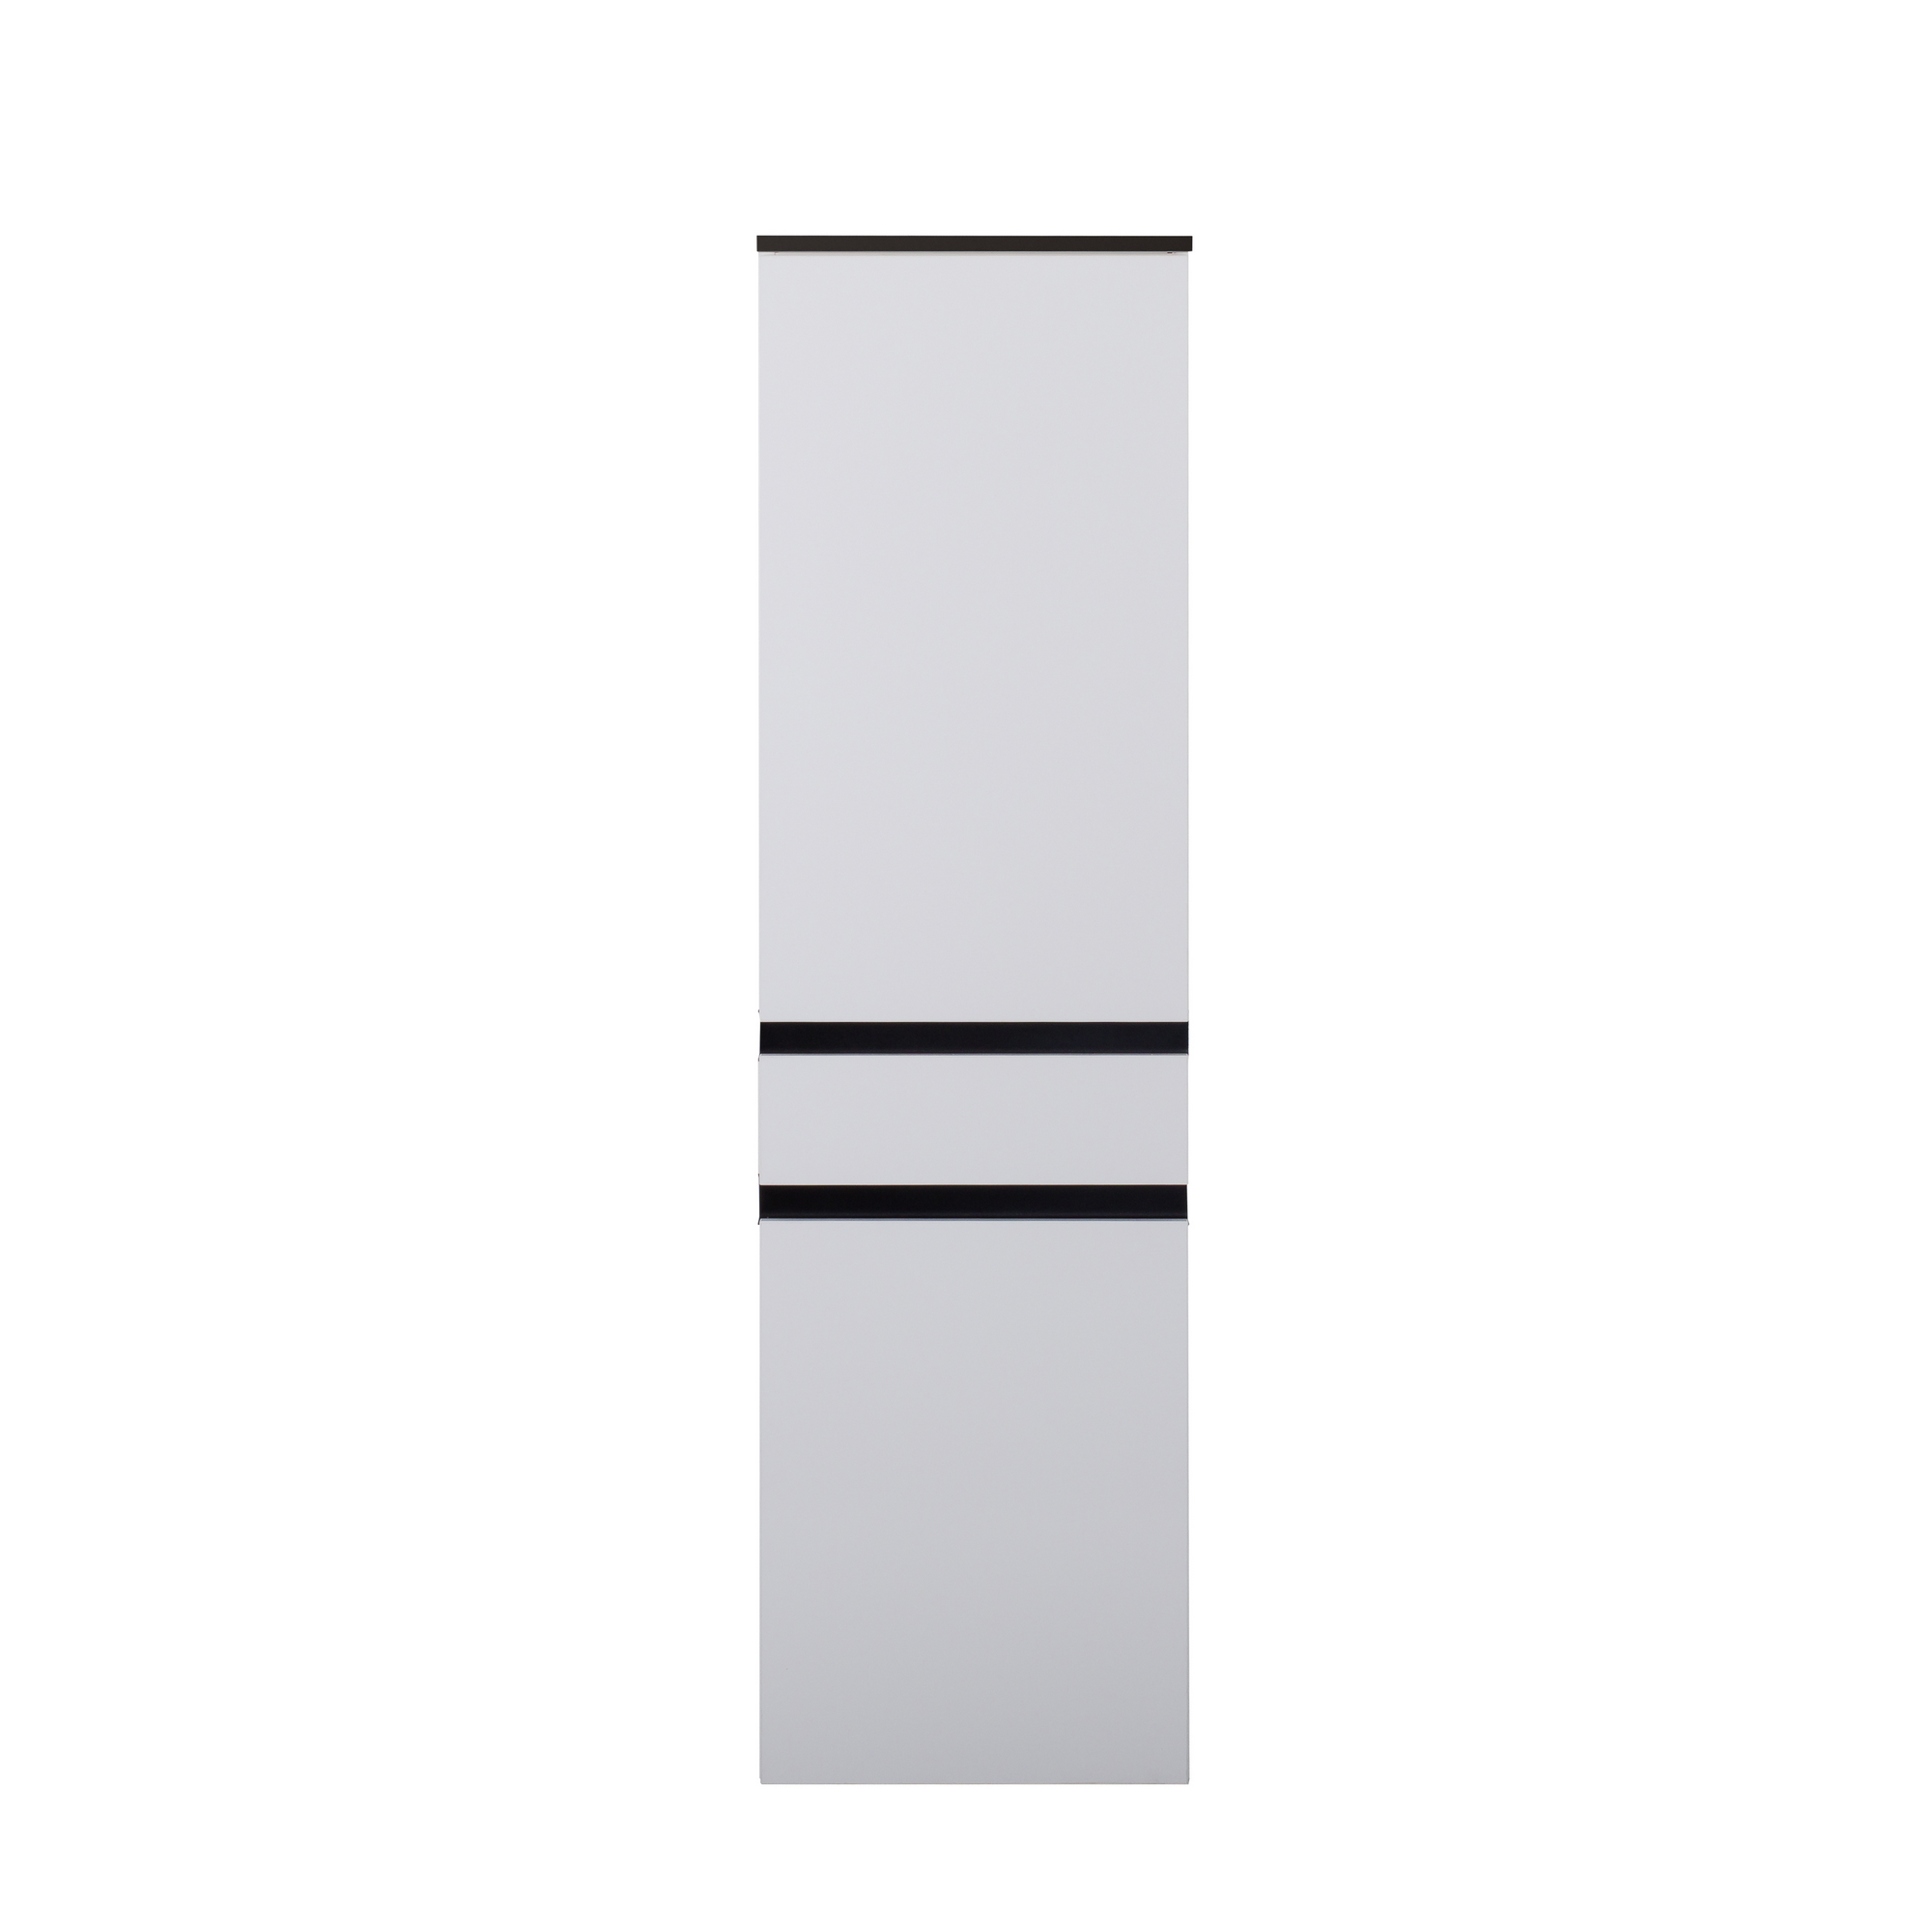 Beistellschrank 'OPTIpremio 2510clarus' weiß, schwarz 40 x 148,8 x 35 cm + product picture